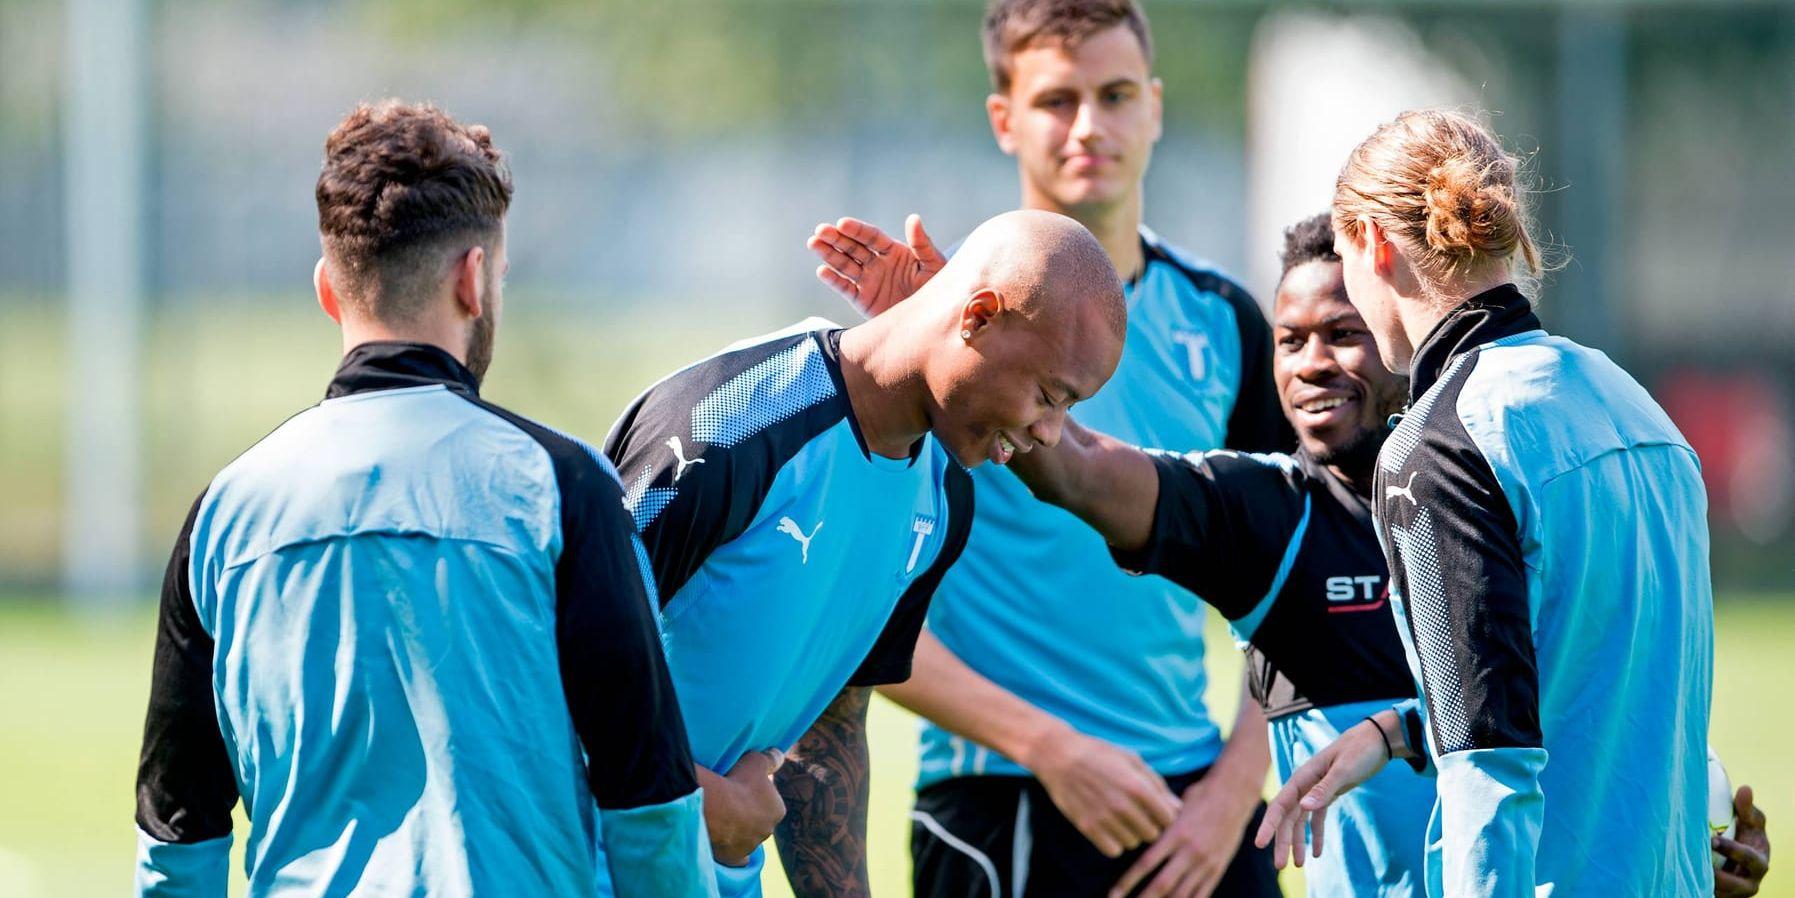 Anfallaren Carlos Strandberg har gjort sin första träning med Malmö FF och klappas här om av ett annat sommarförvärv, Kingsley Sarfo från Sirius.